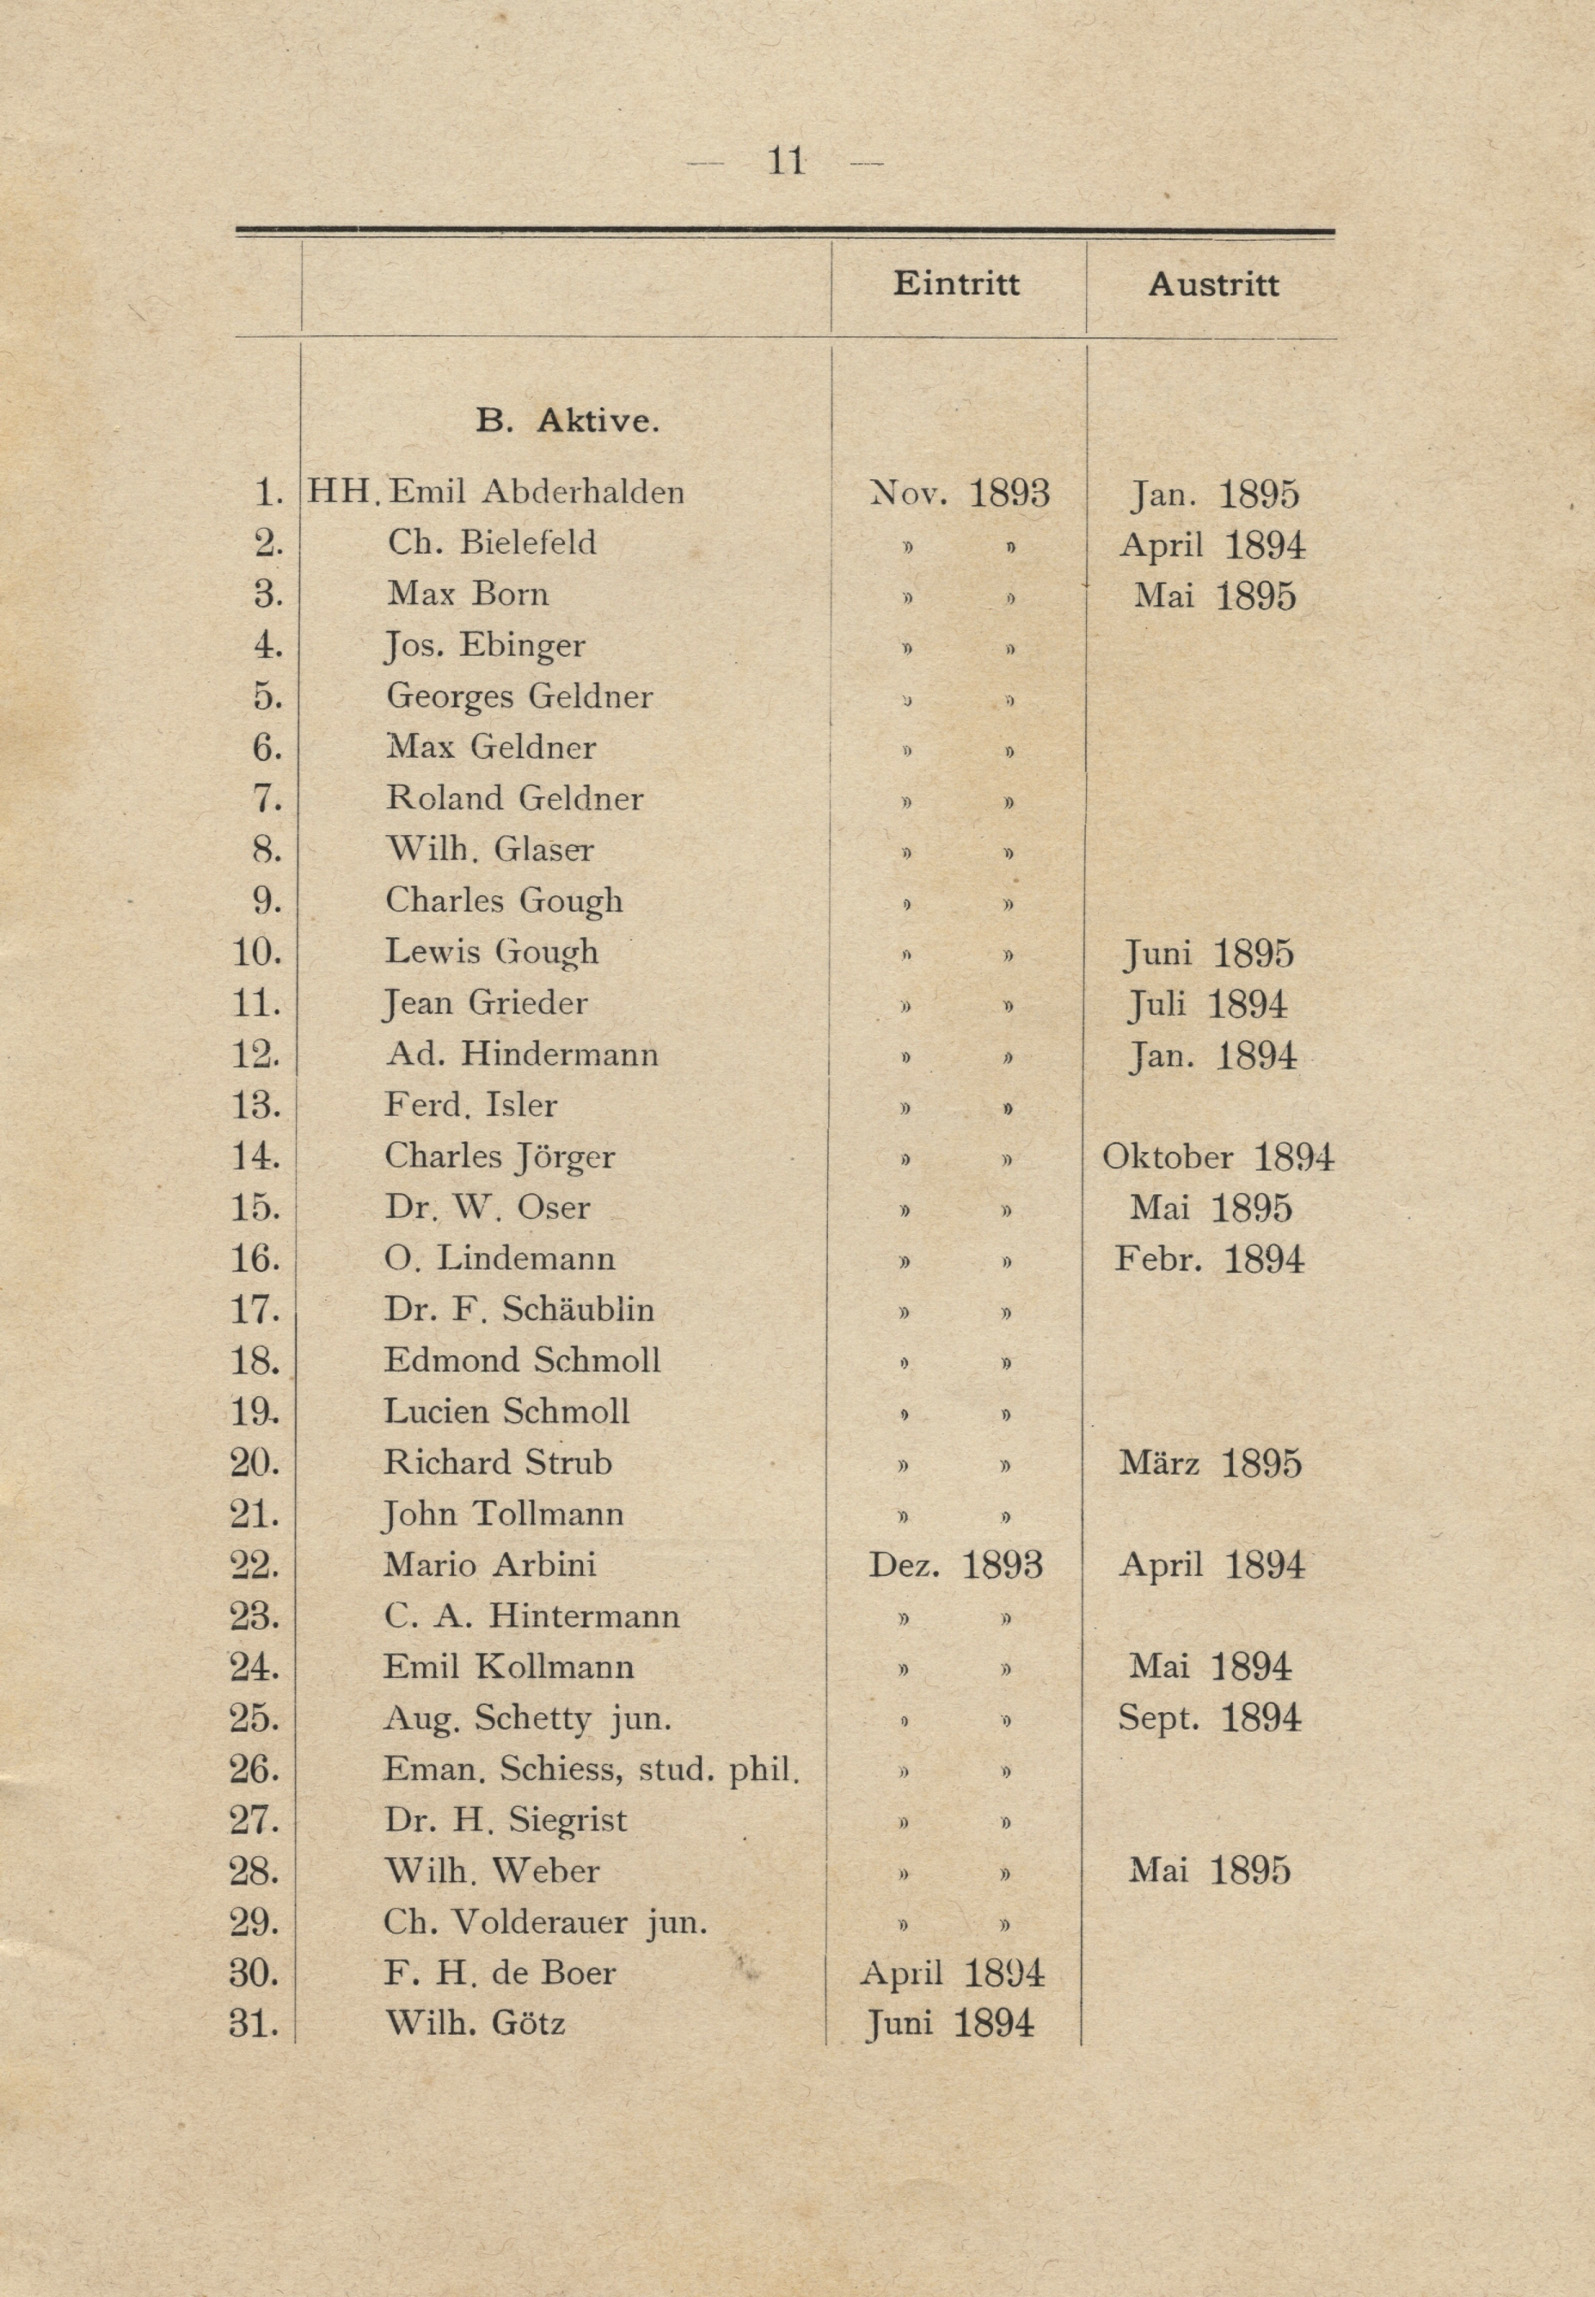 Die Liste der Aktivmiglieder des Footballclub Basel – festgehalten im Jahresbericht vom 1. September 1894 bis 31. August 1895, «des ersten eigentlichen Sportjahres unseres Clubs», wie es in den Annalen heisst.